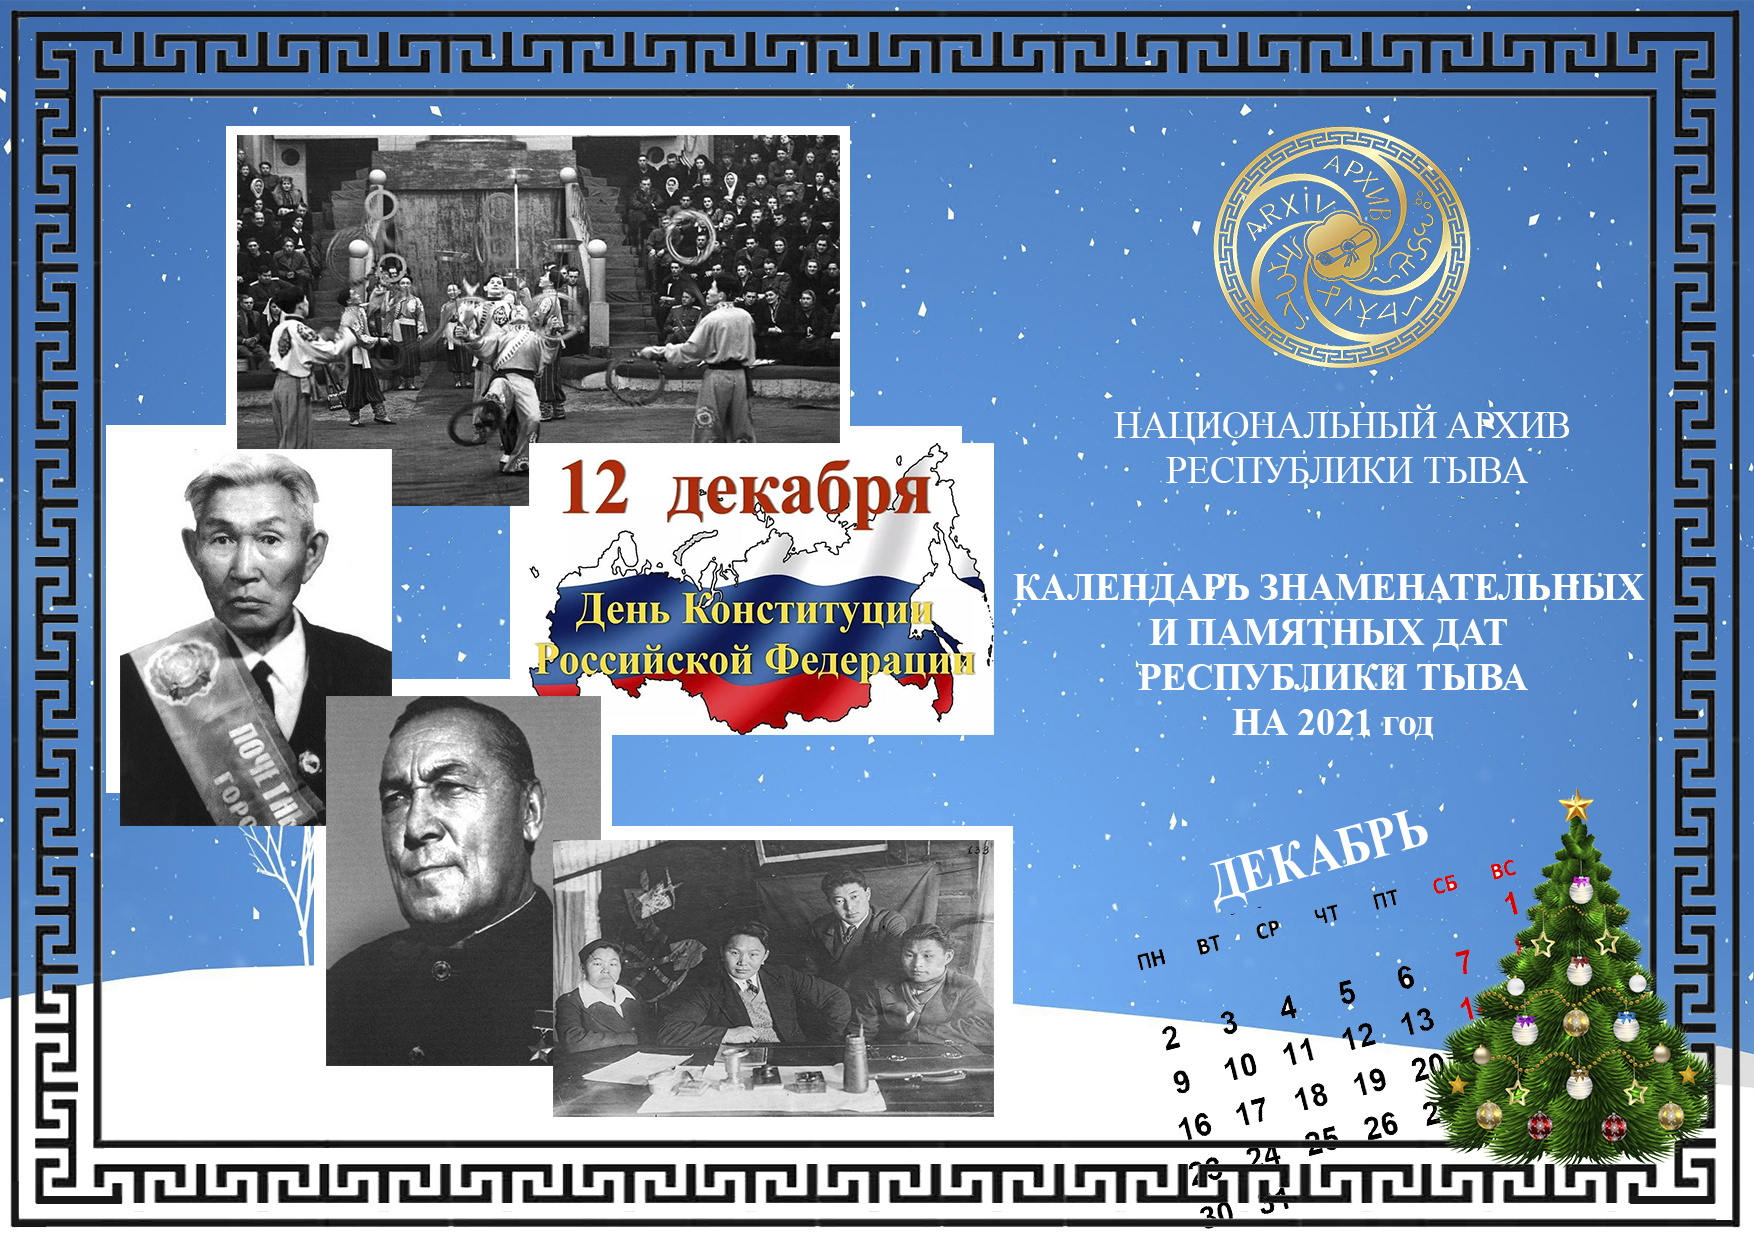 Календарь знаменательных и памятных дат в истории Тувы и России на декабрь  2021 года — Национальный архив Республики Тыва